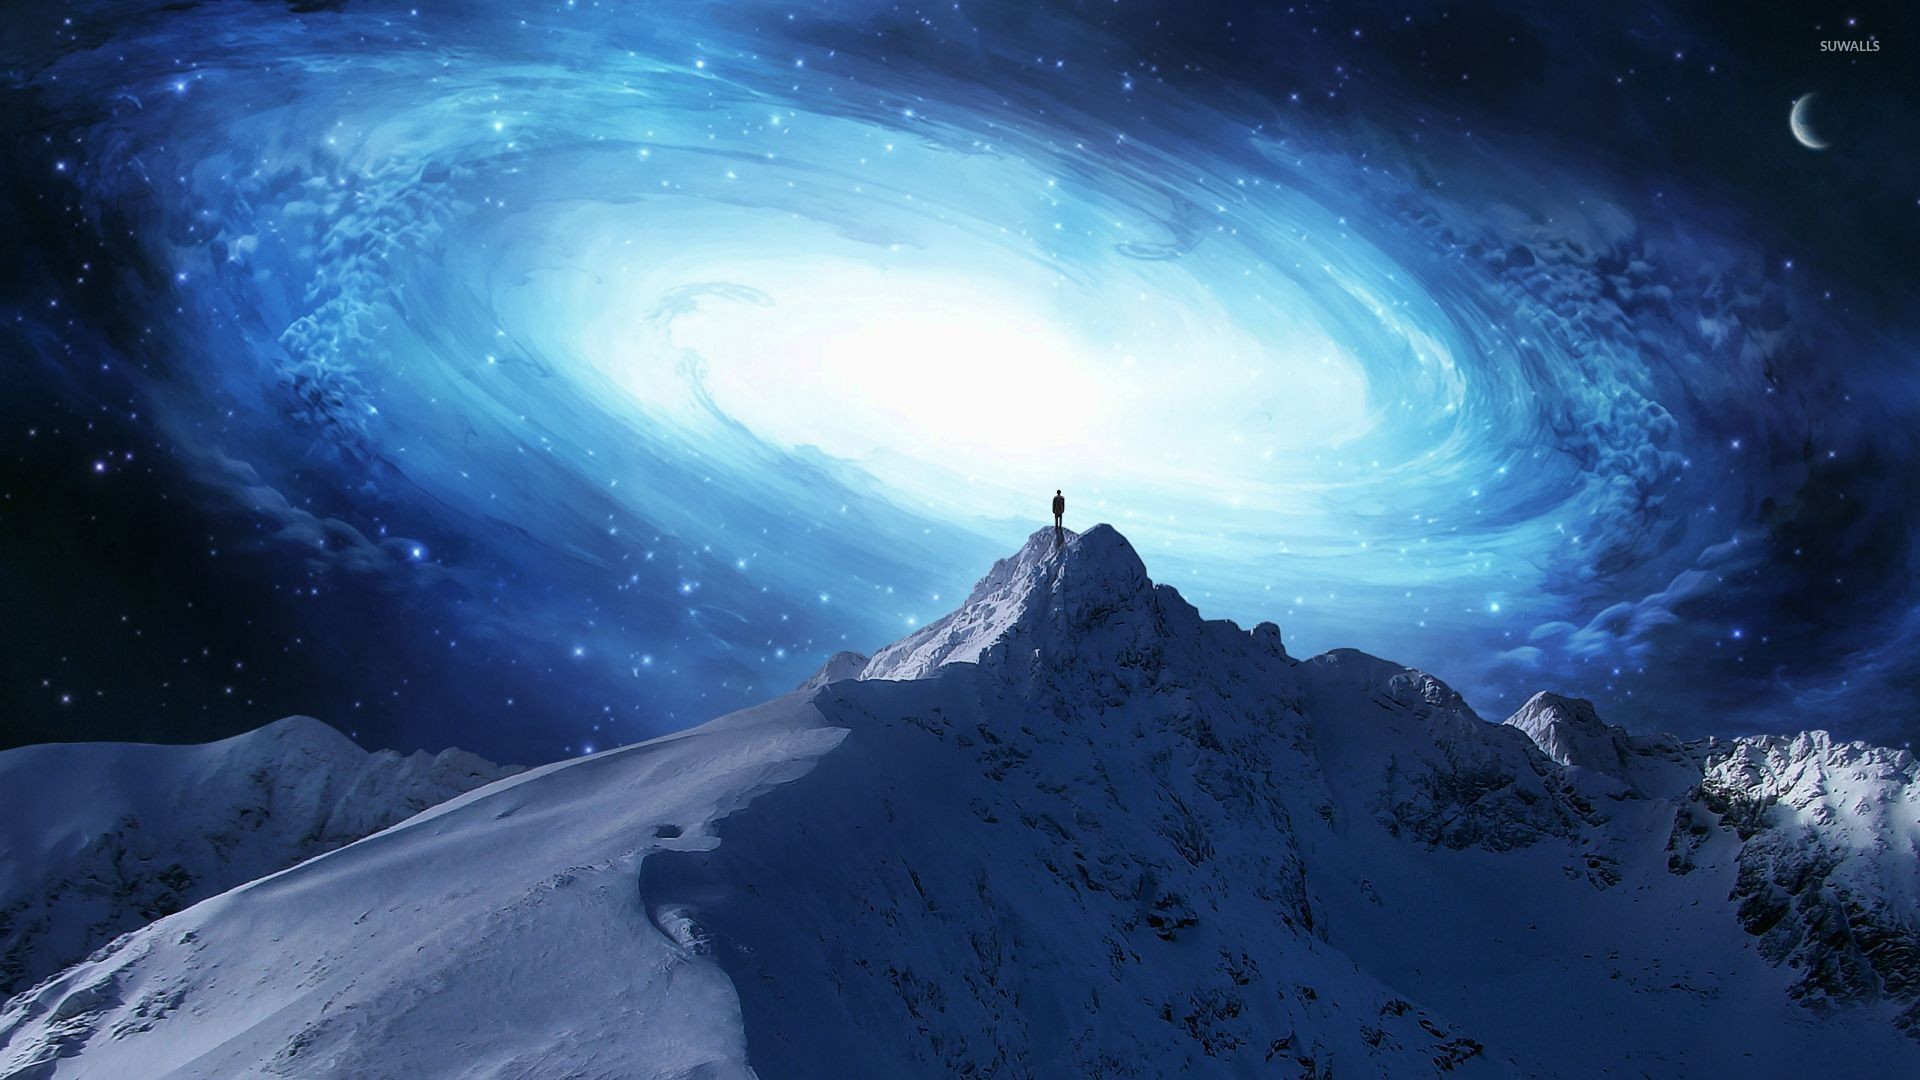 Man on the mountain peak overlooking the galaxy wallpaper jpg